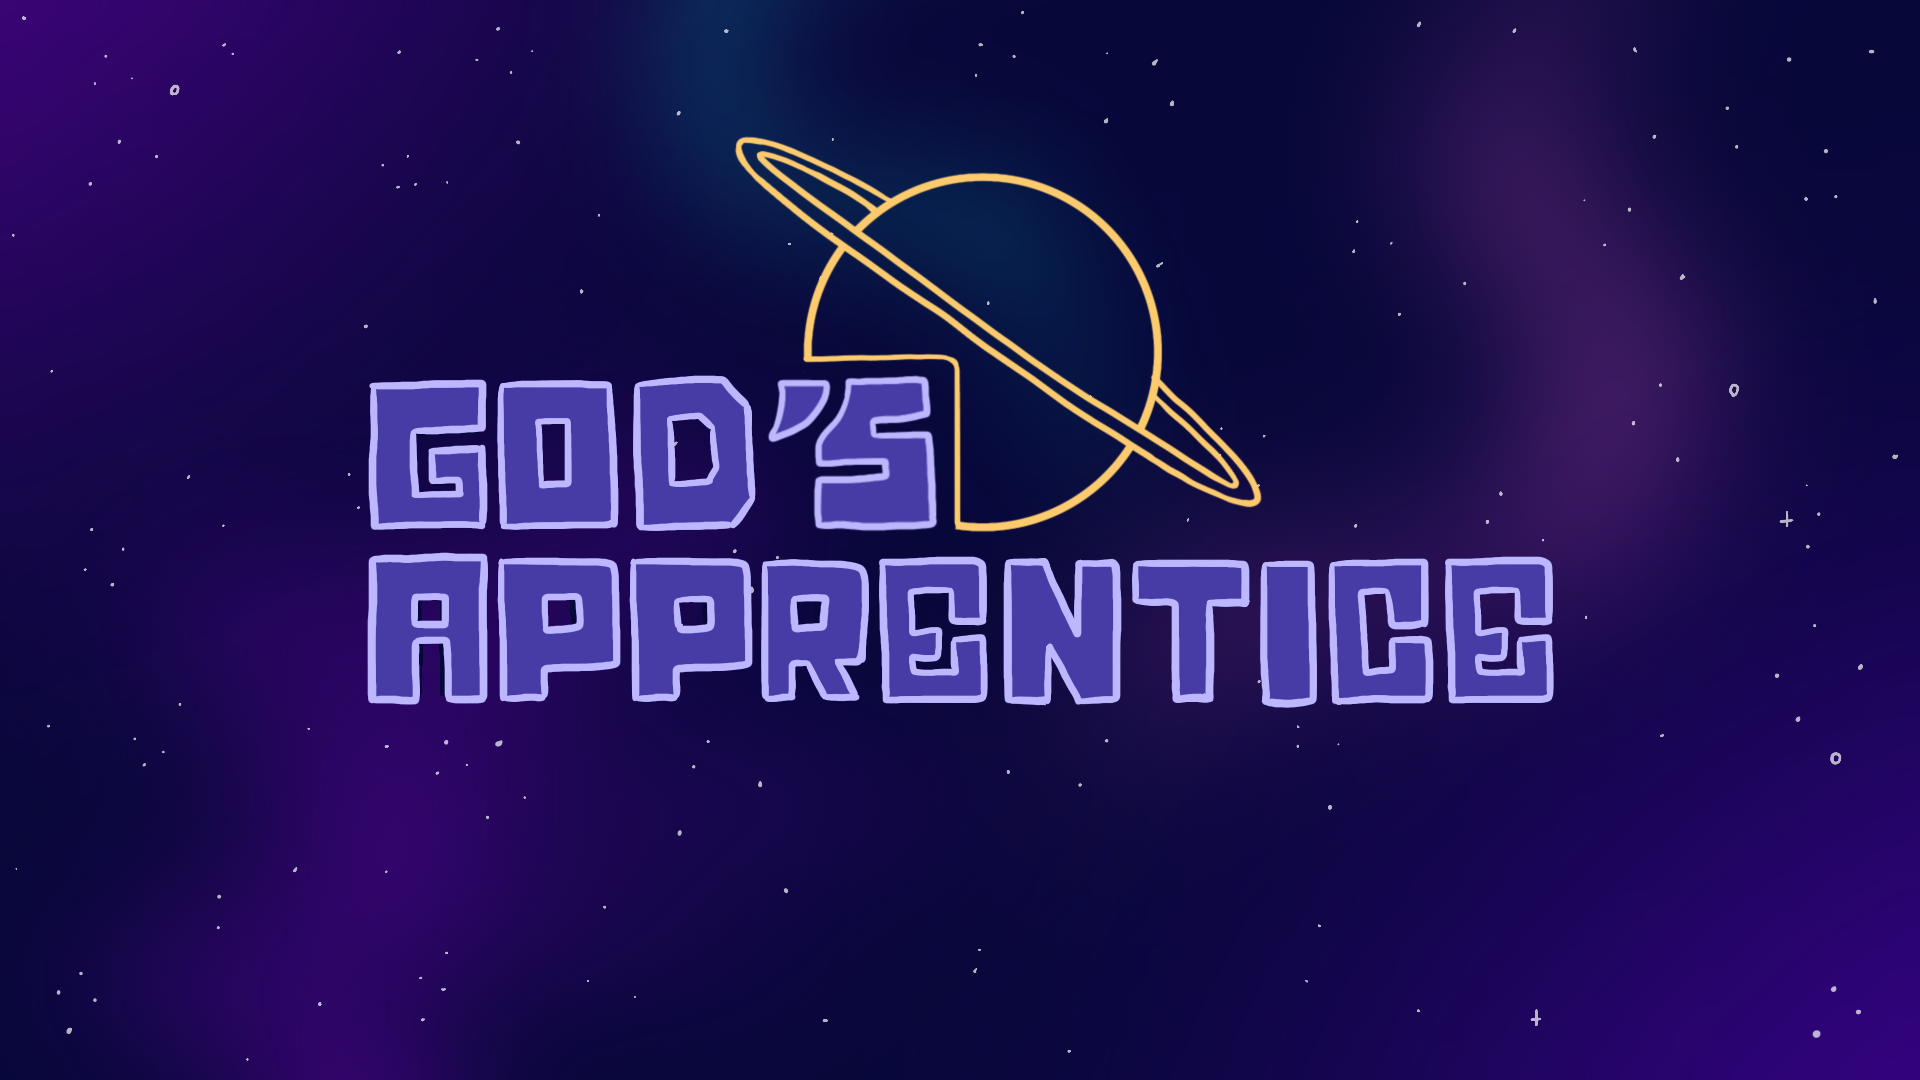 God's Apprentice